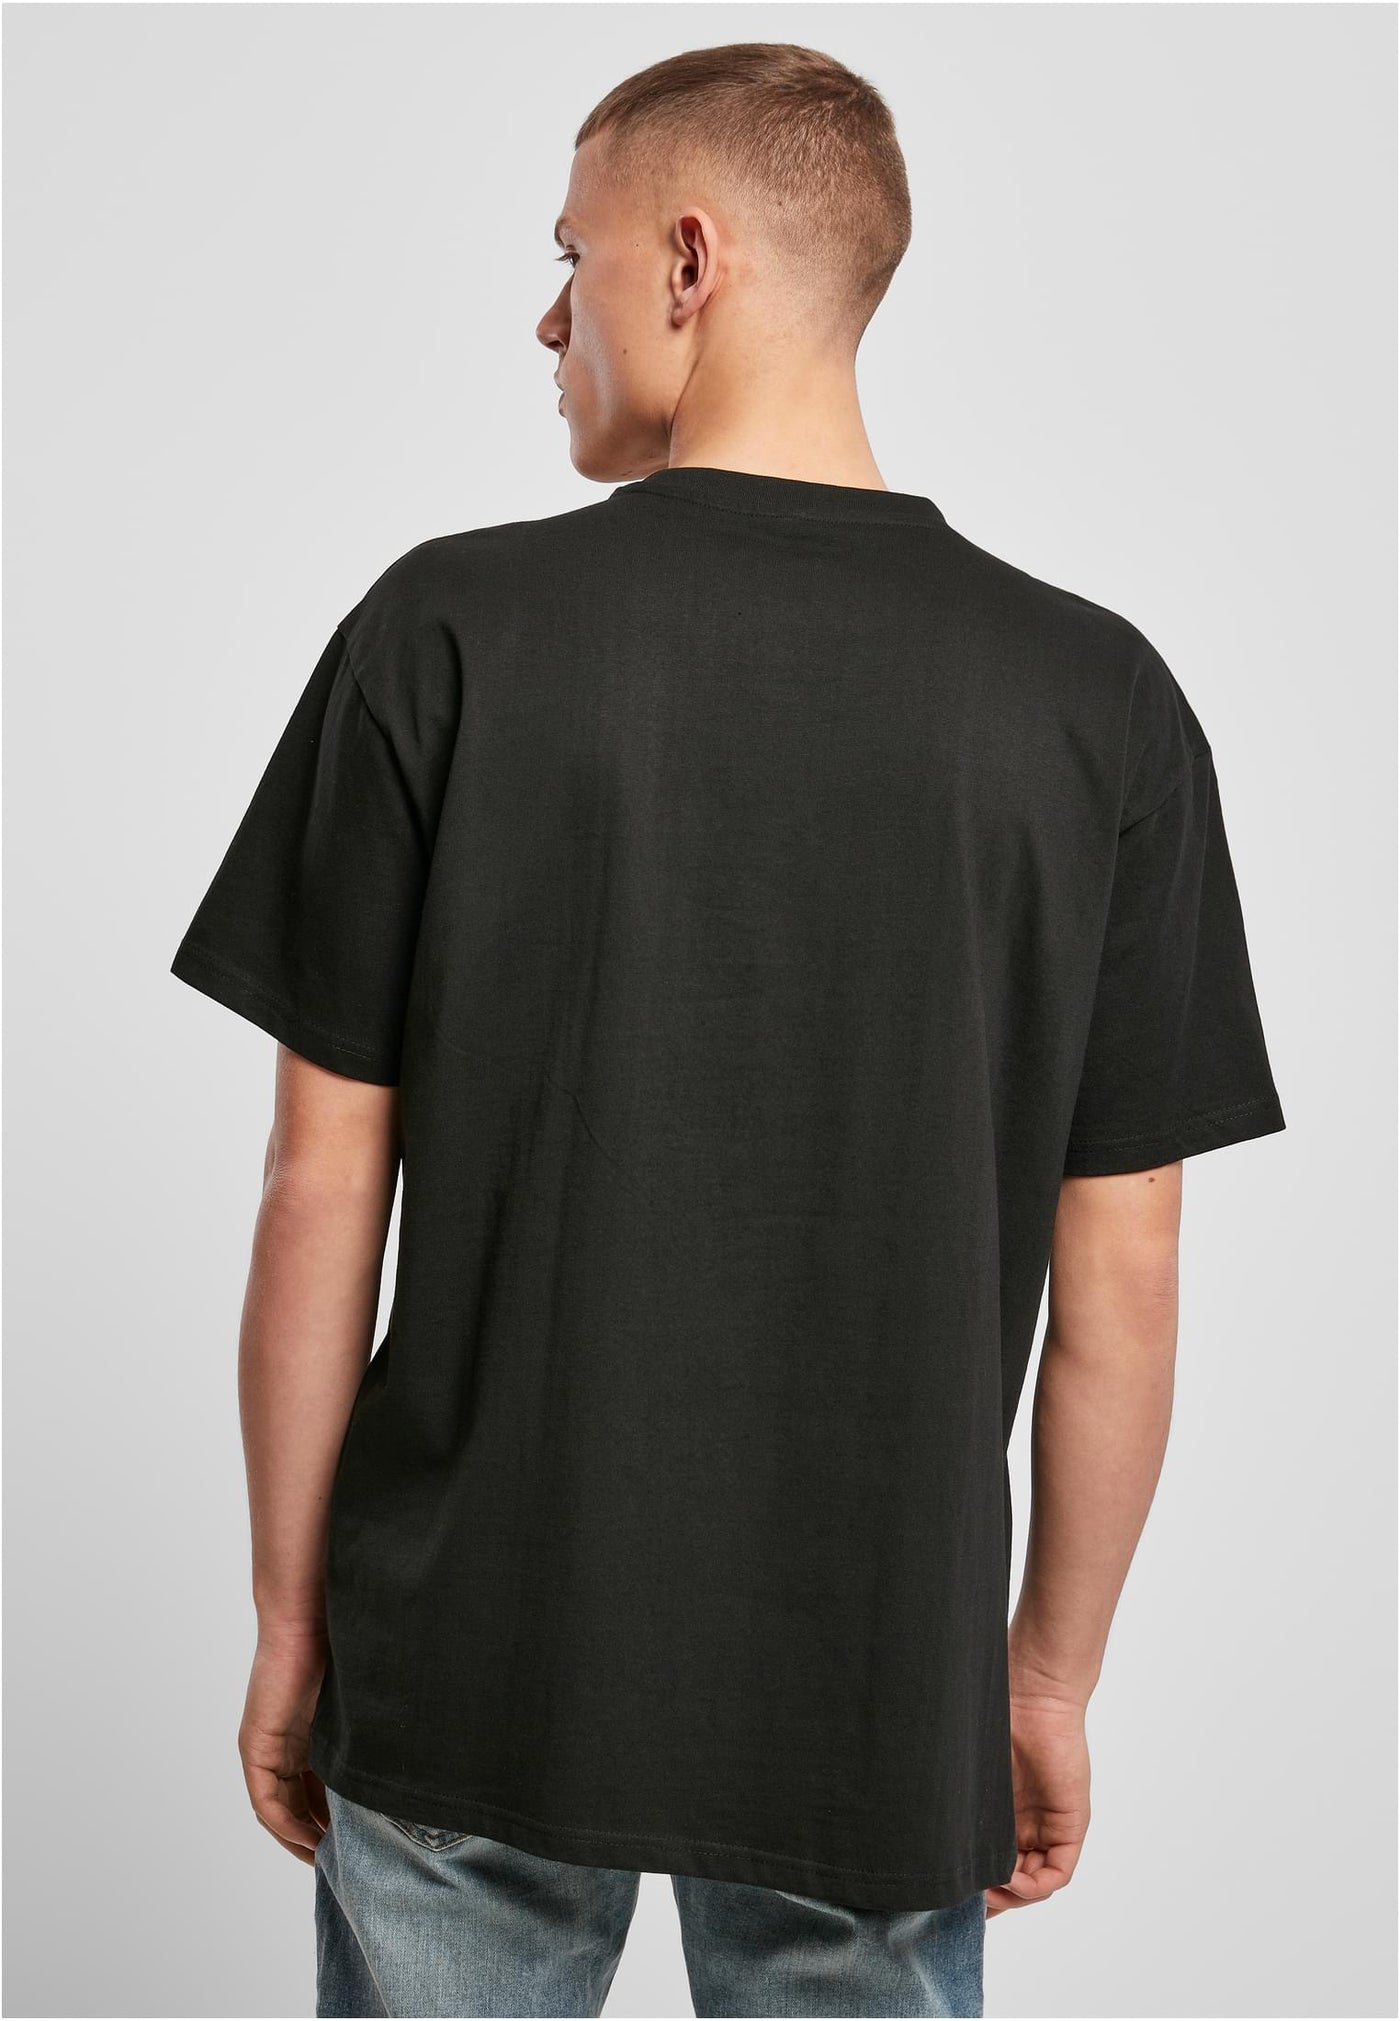 YO-C BY 102 Heavy Oversized Blank T-Shirt - Black